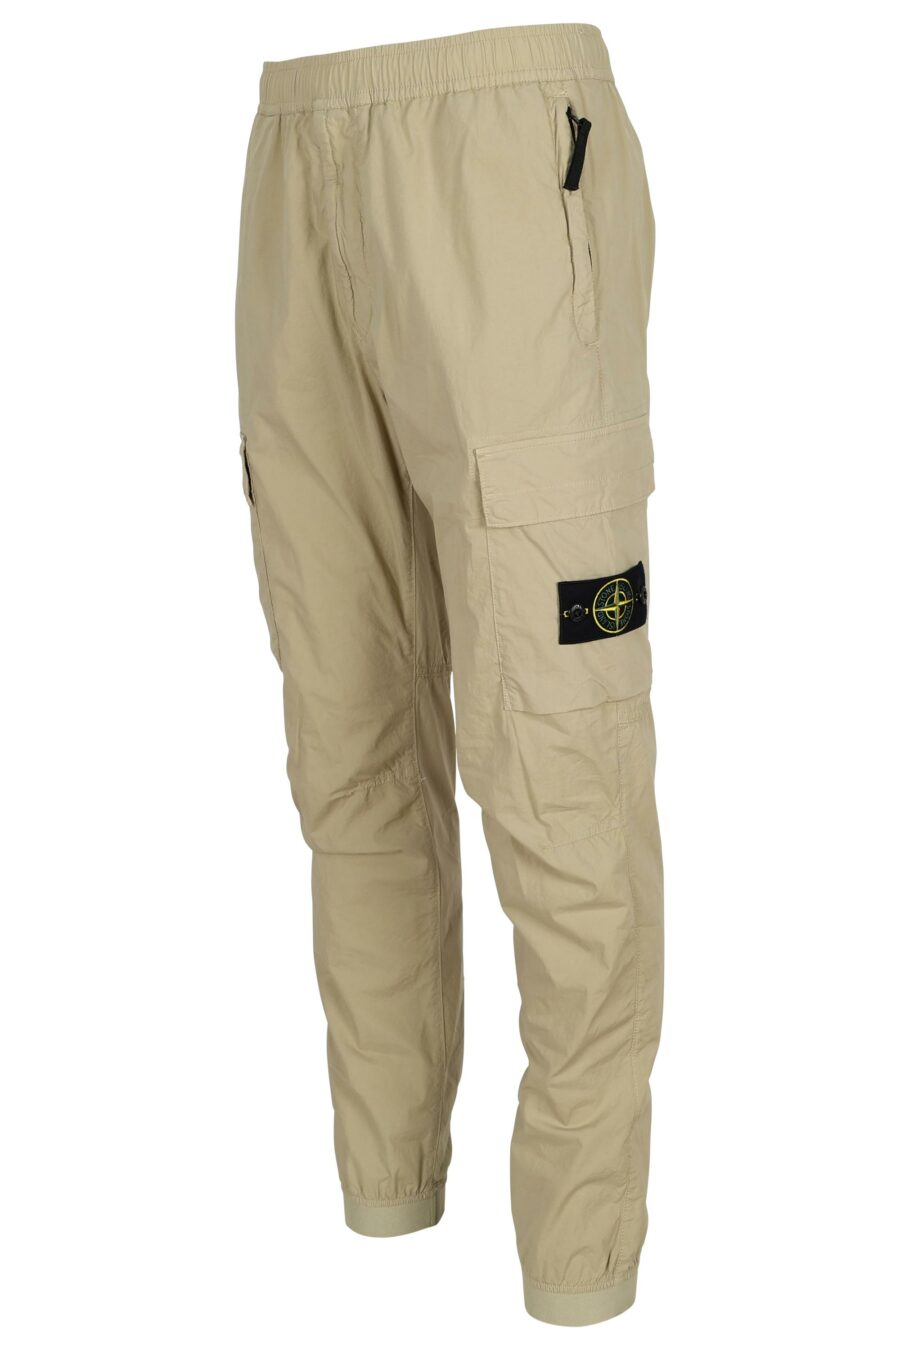 Pantalon fuselé de couleur sable avec logo boussole - 8052572906572 2